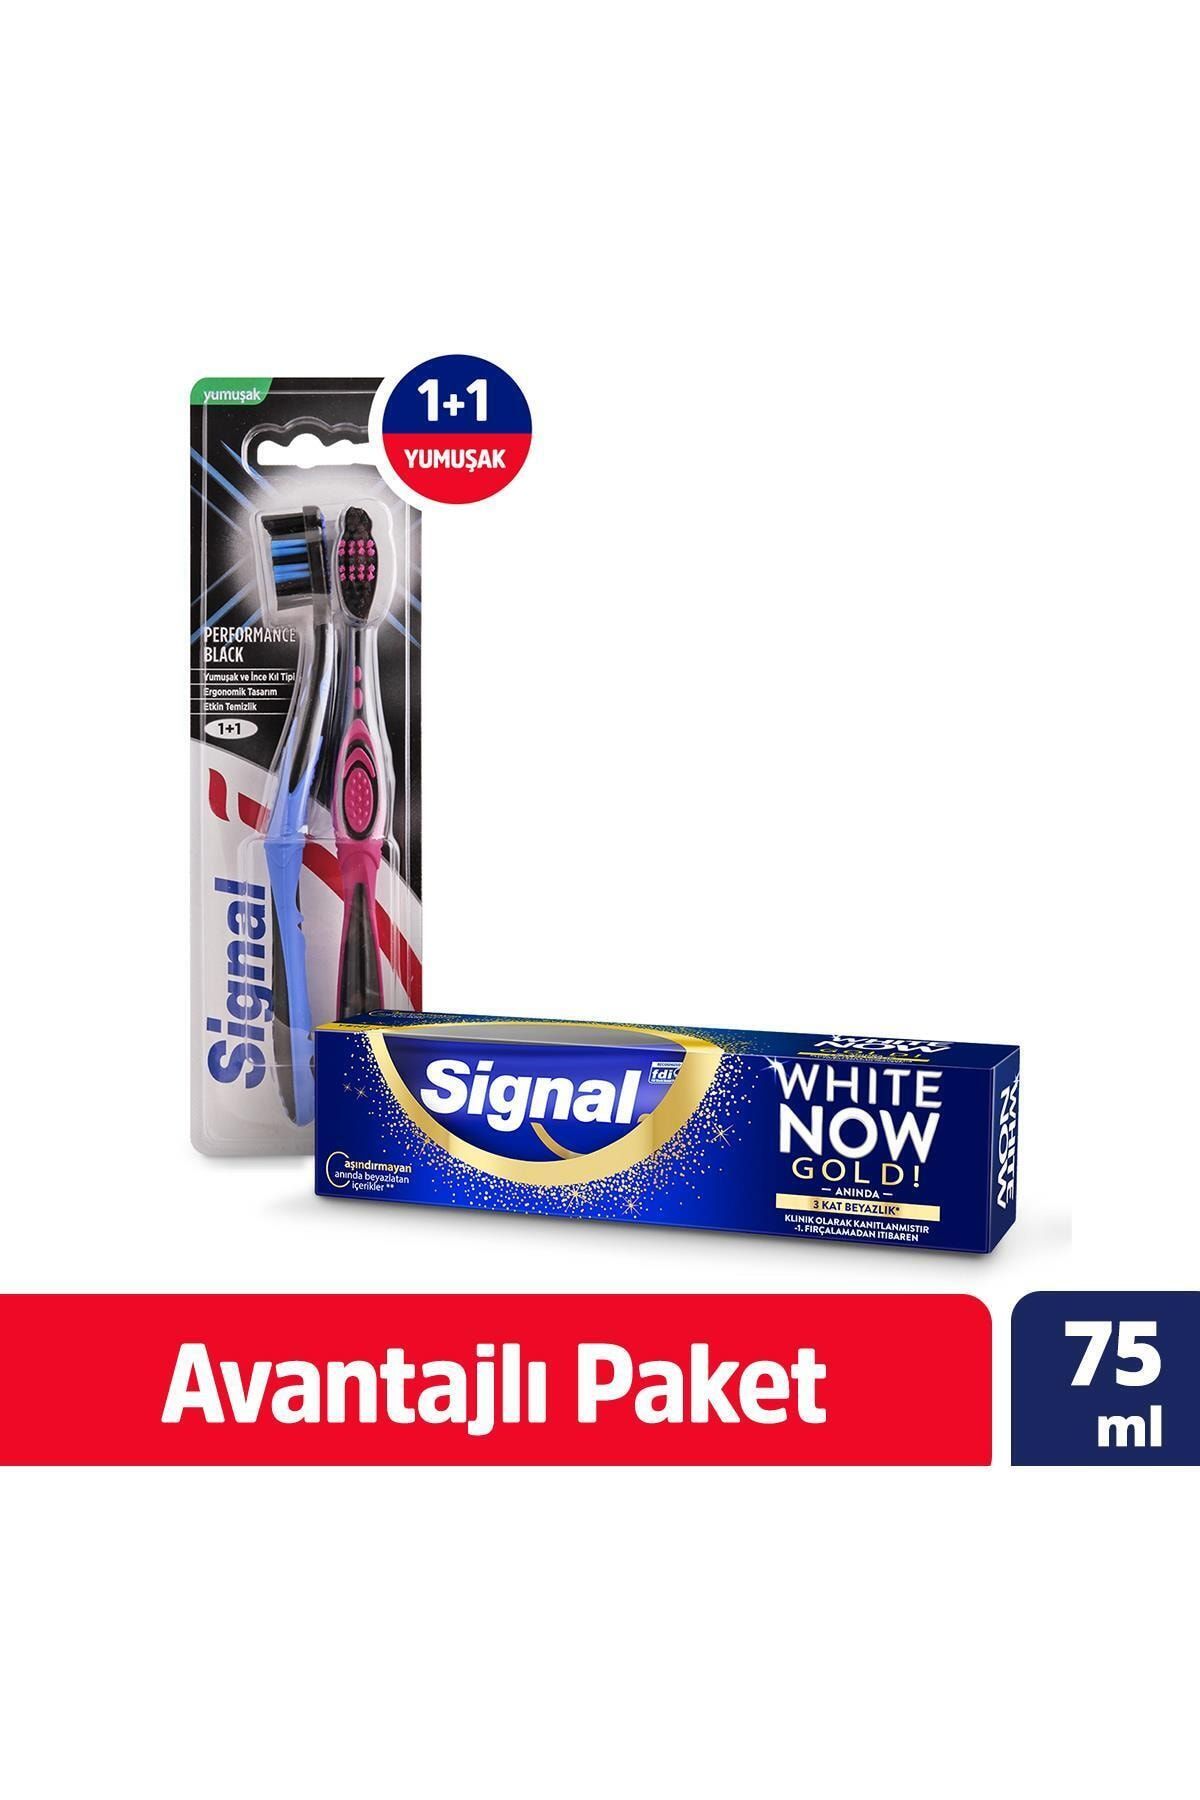 Signal Performance Black 1+1 Yumuşak Diş Fırçası + White Now Gold Anında Beyazlık Diş Macunu 75 ml